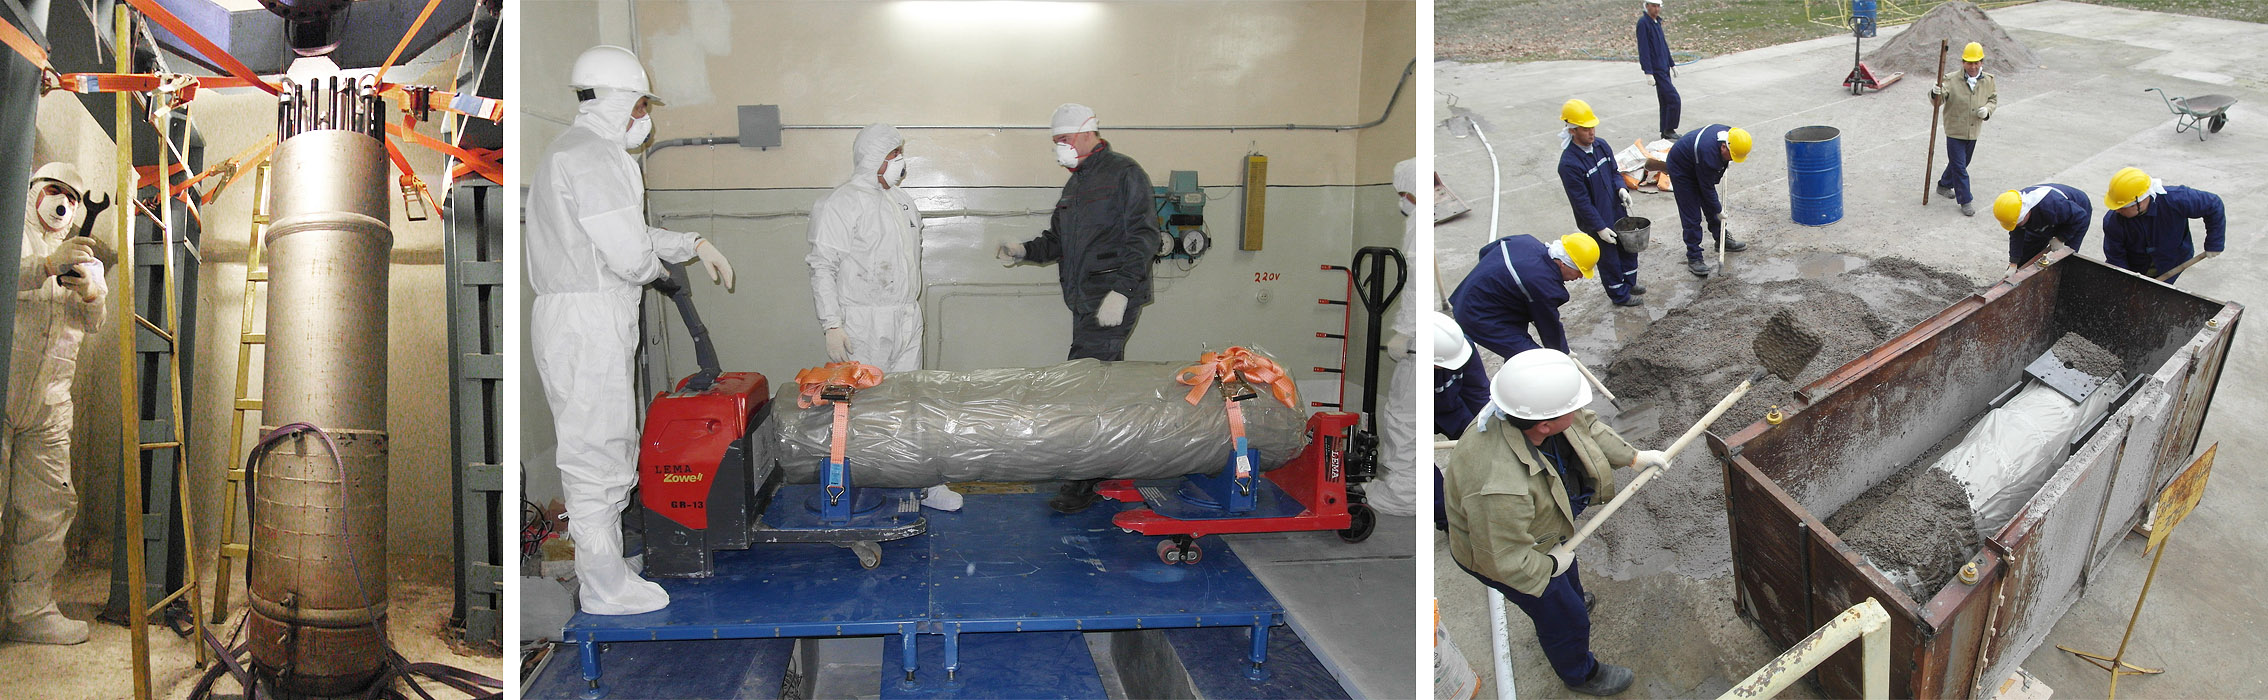 Демонтаж и подготовка к перевозке на захоронение корпуса реактора ИИН-3М